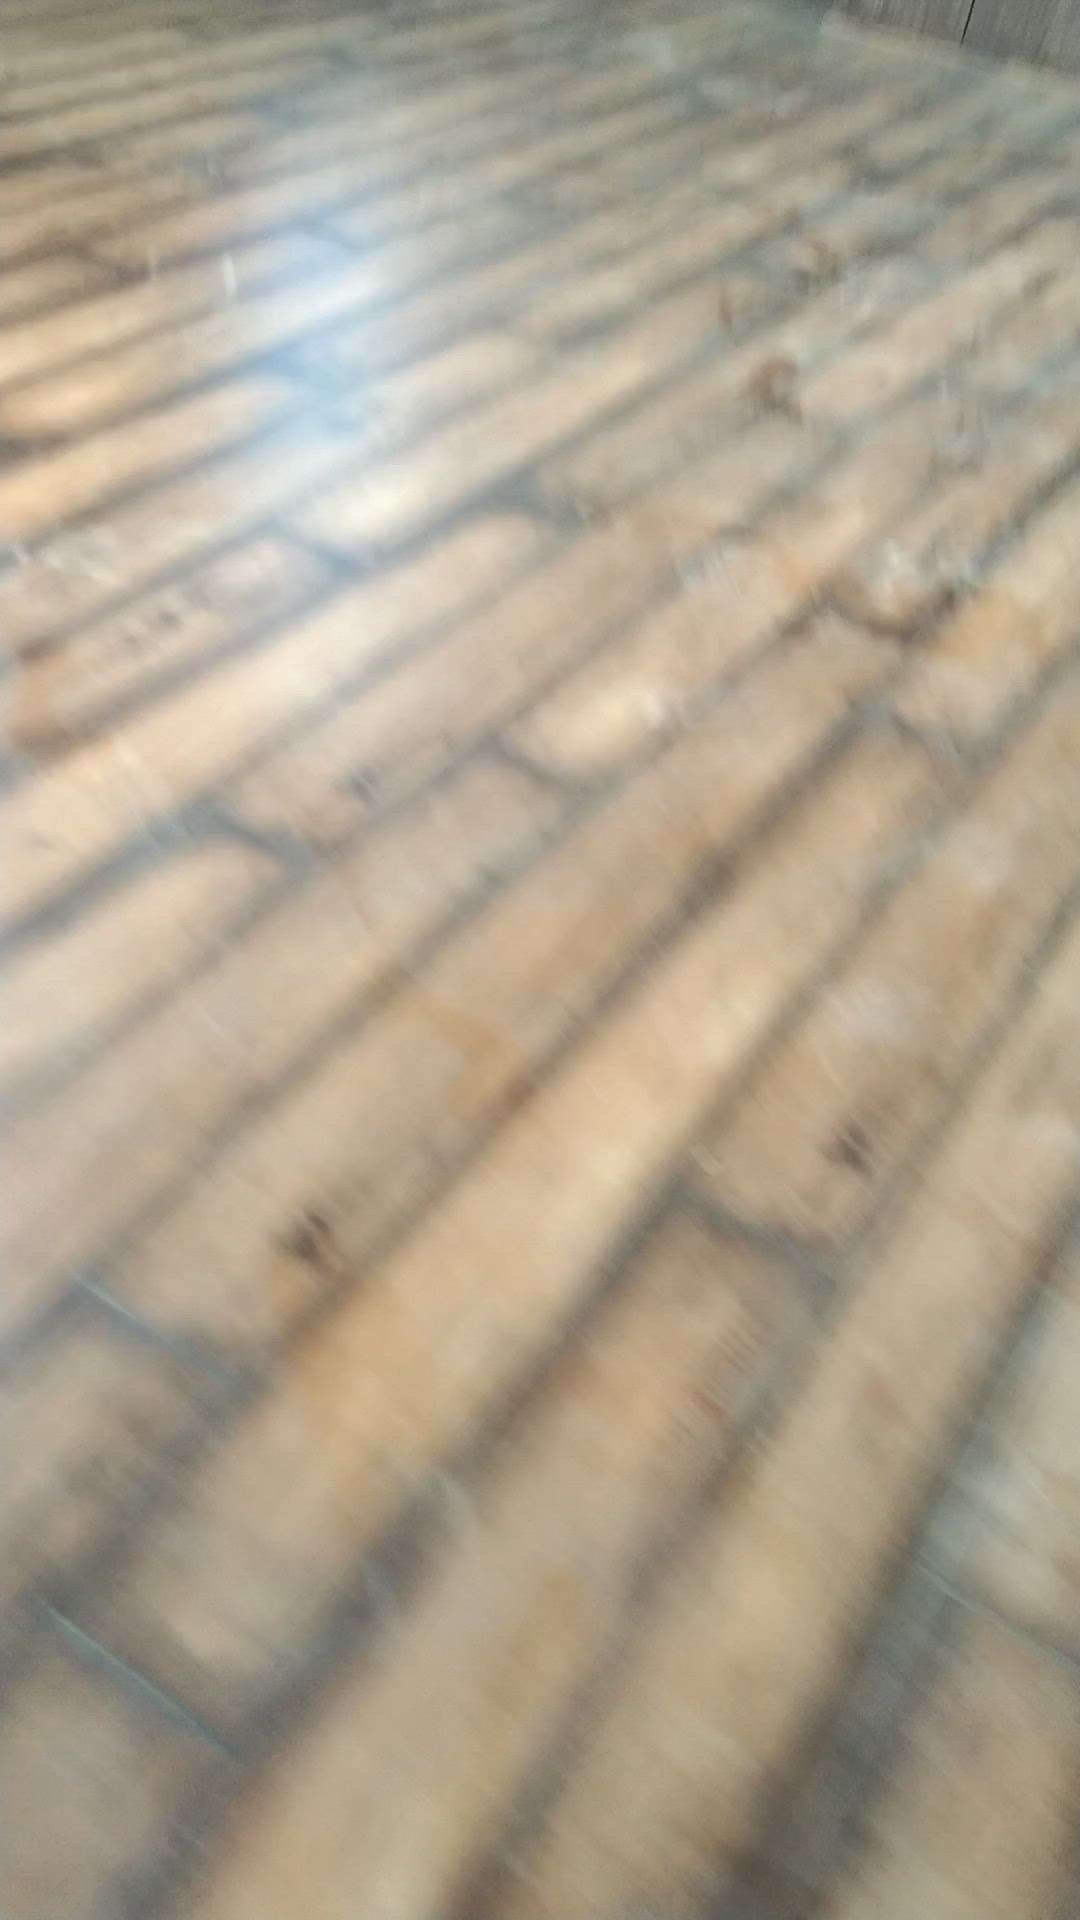 woodan flooring work caplet